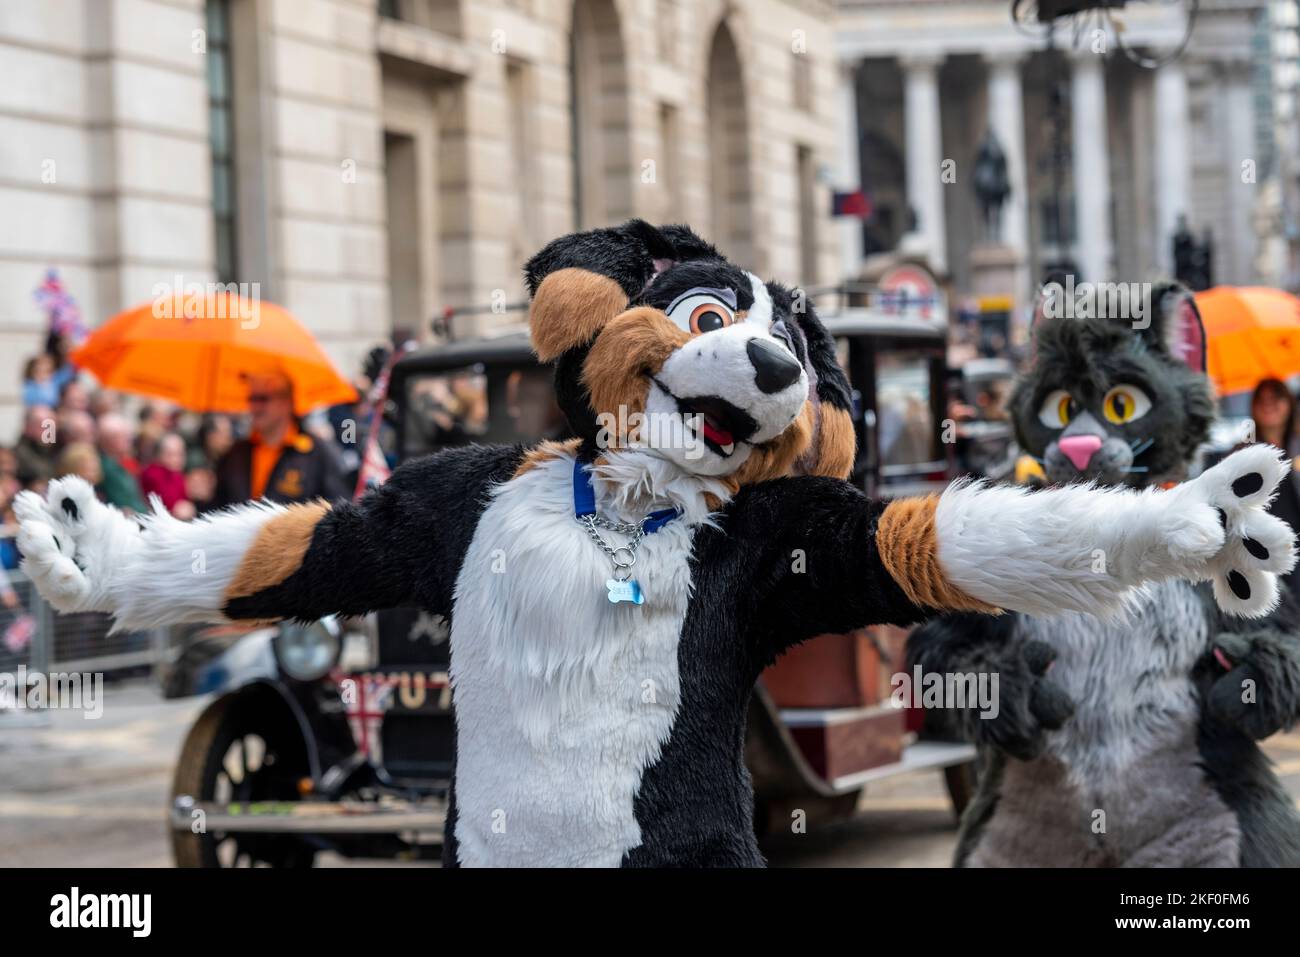 LONDON TAXI FAHRER WOHLTÄTIGKEITSORGANISATION FÜR KINDER bei der Lord Mayor's Show Parade in der City of London, Großbritannien. Hundekostüm Stockfoto